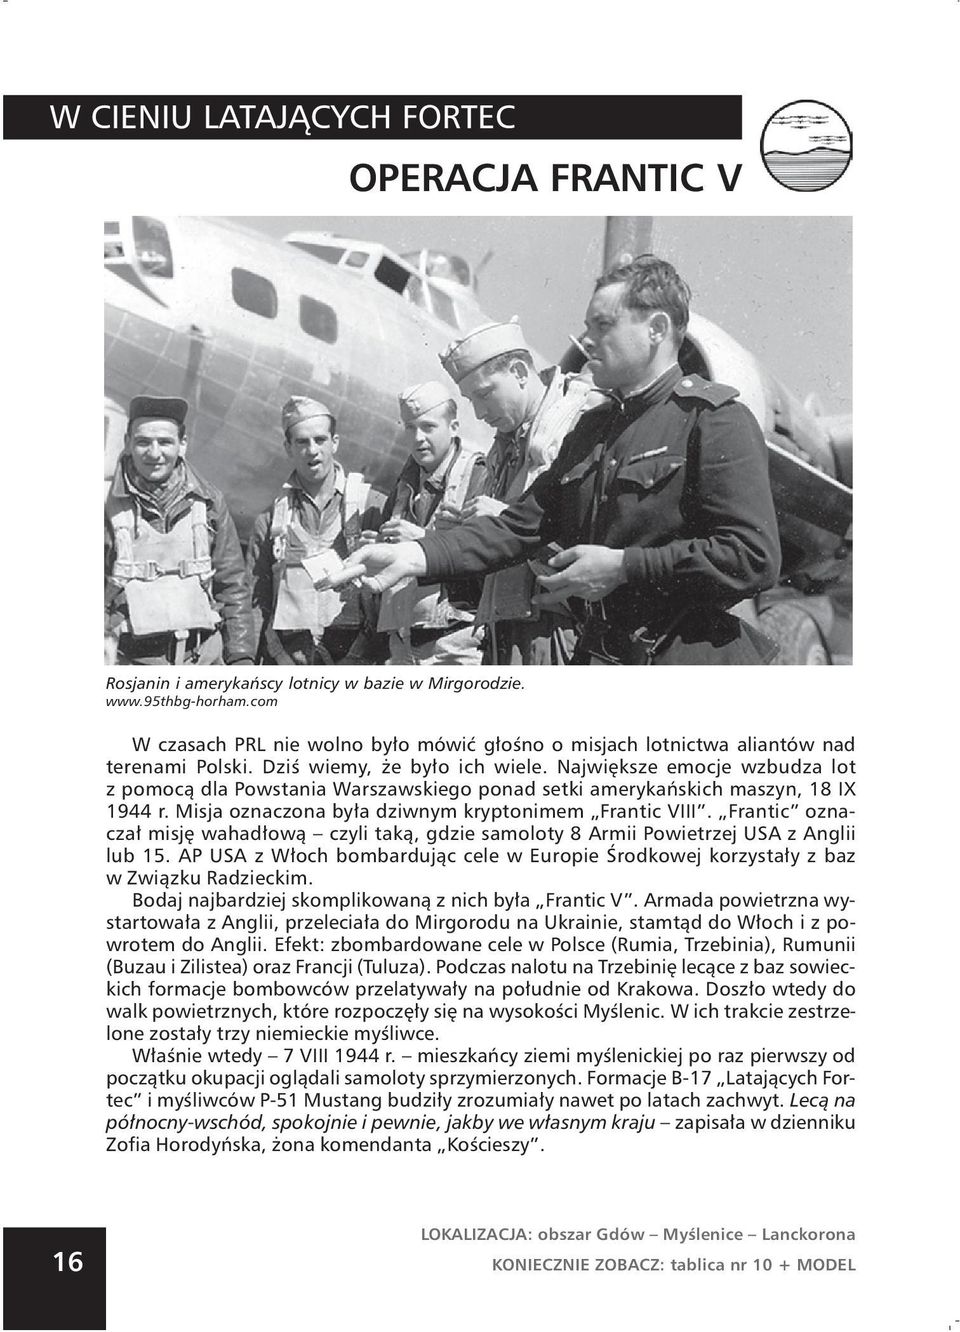 Największe emocje wzbudza lot z pomocą dla Powstania Warszawskiego ponad setki amerykańskich maszyn, 18 IX 1944 r. Misja oznaczona była dziwnym kryptonimem Frantic VIII.